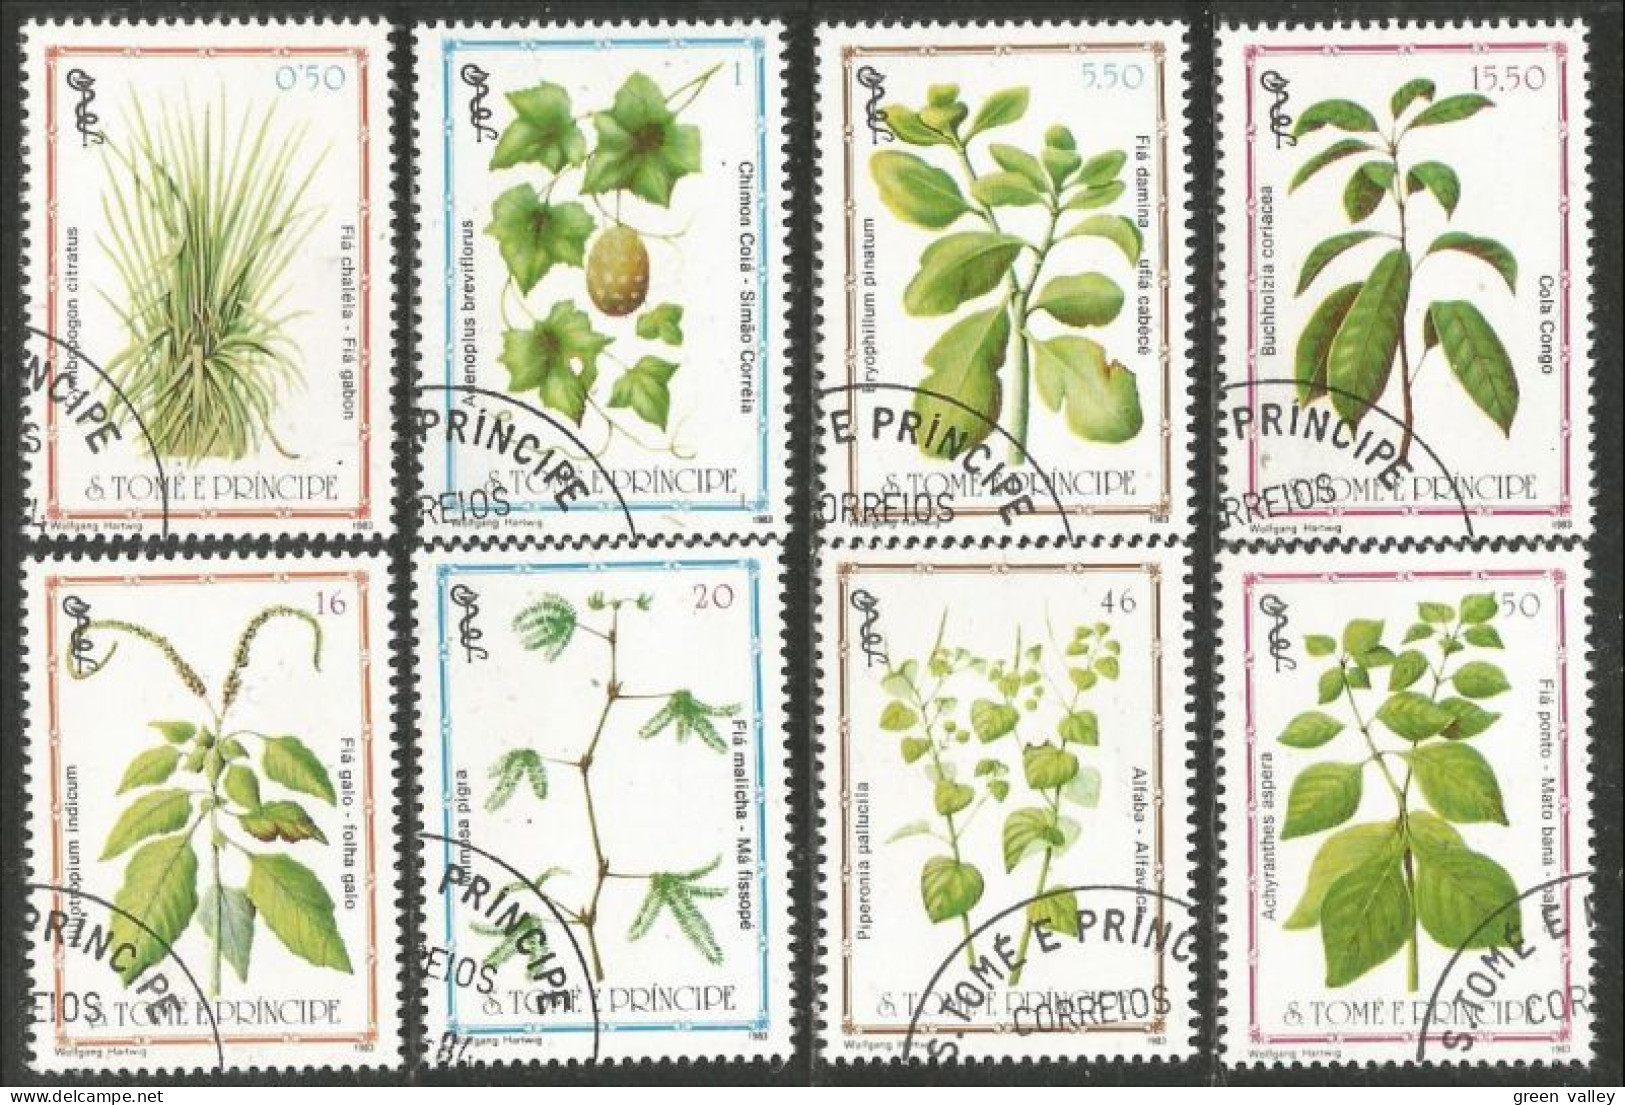 788 Sao Tome Principe Plante Plant Heilpflanze Pflanze Medicinal Médicinale (SAO-23c) - Medicinal Plants